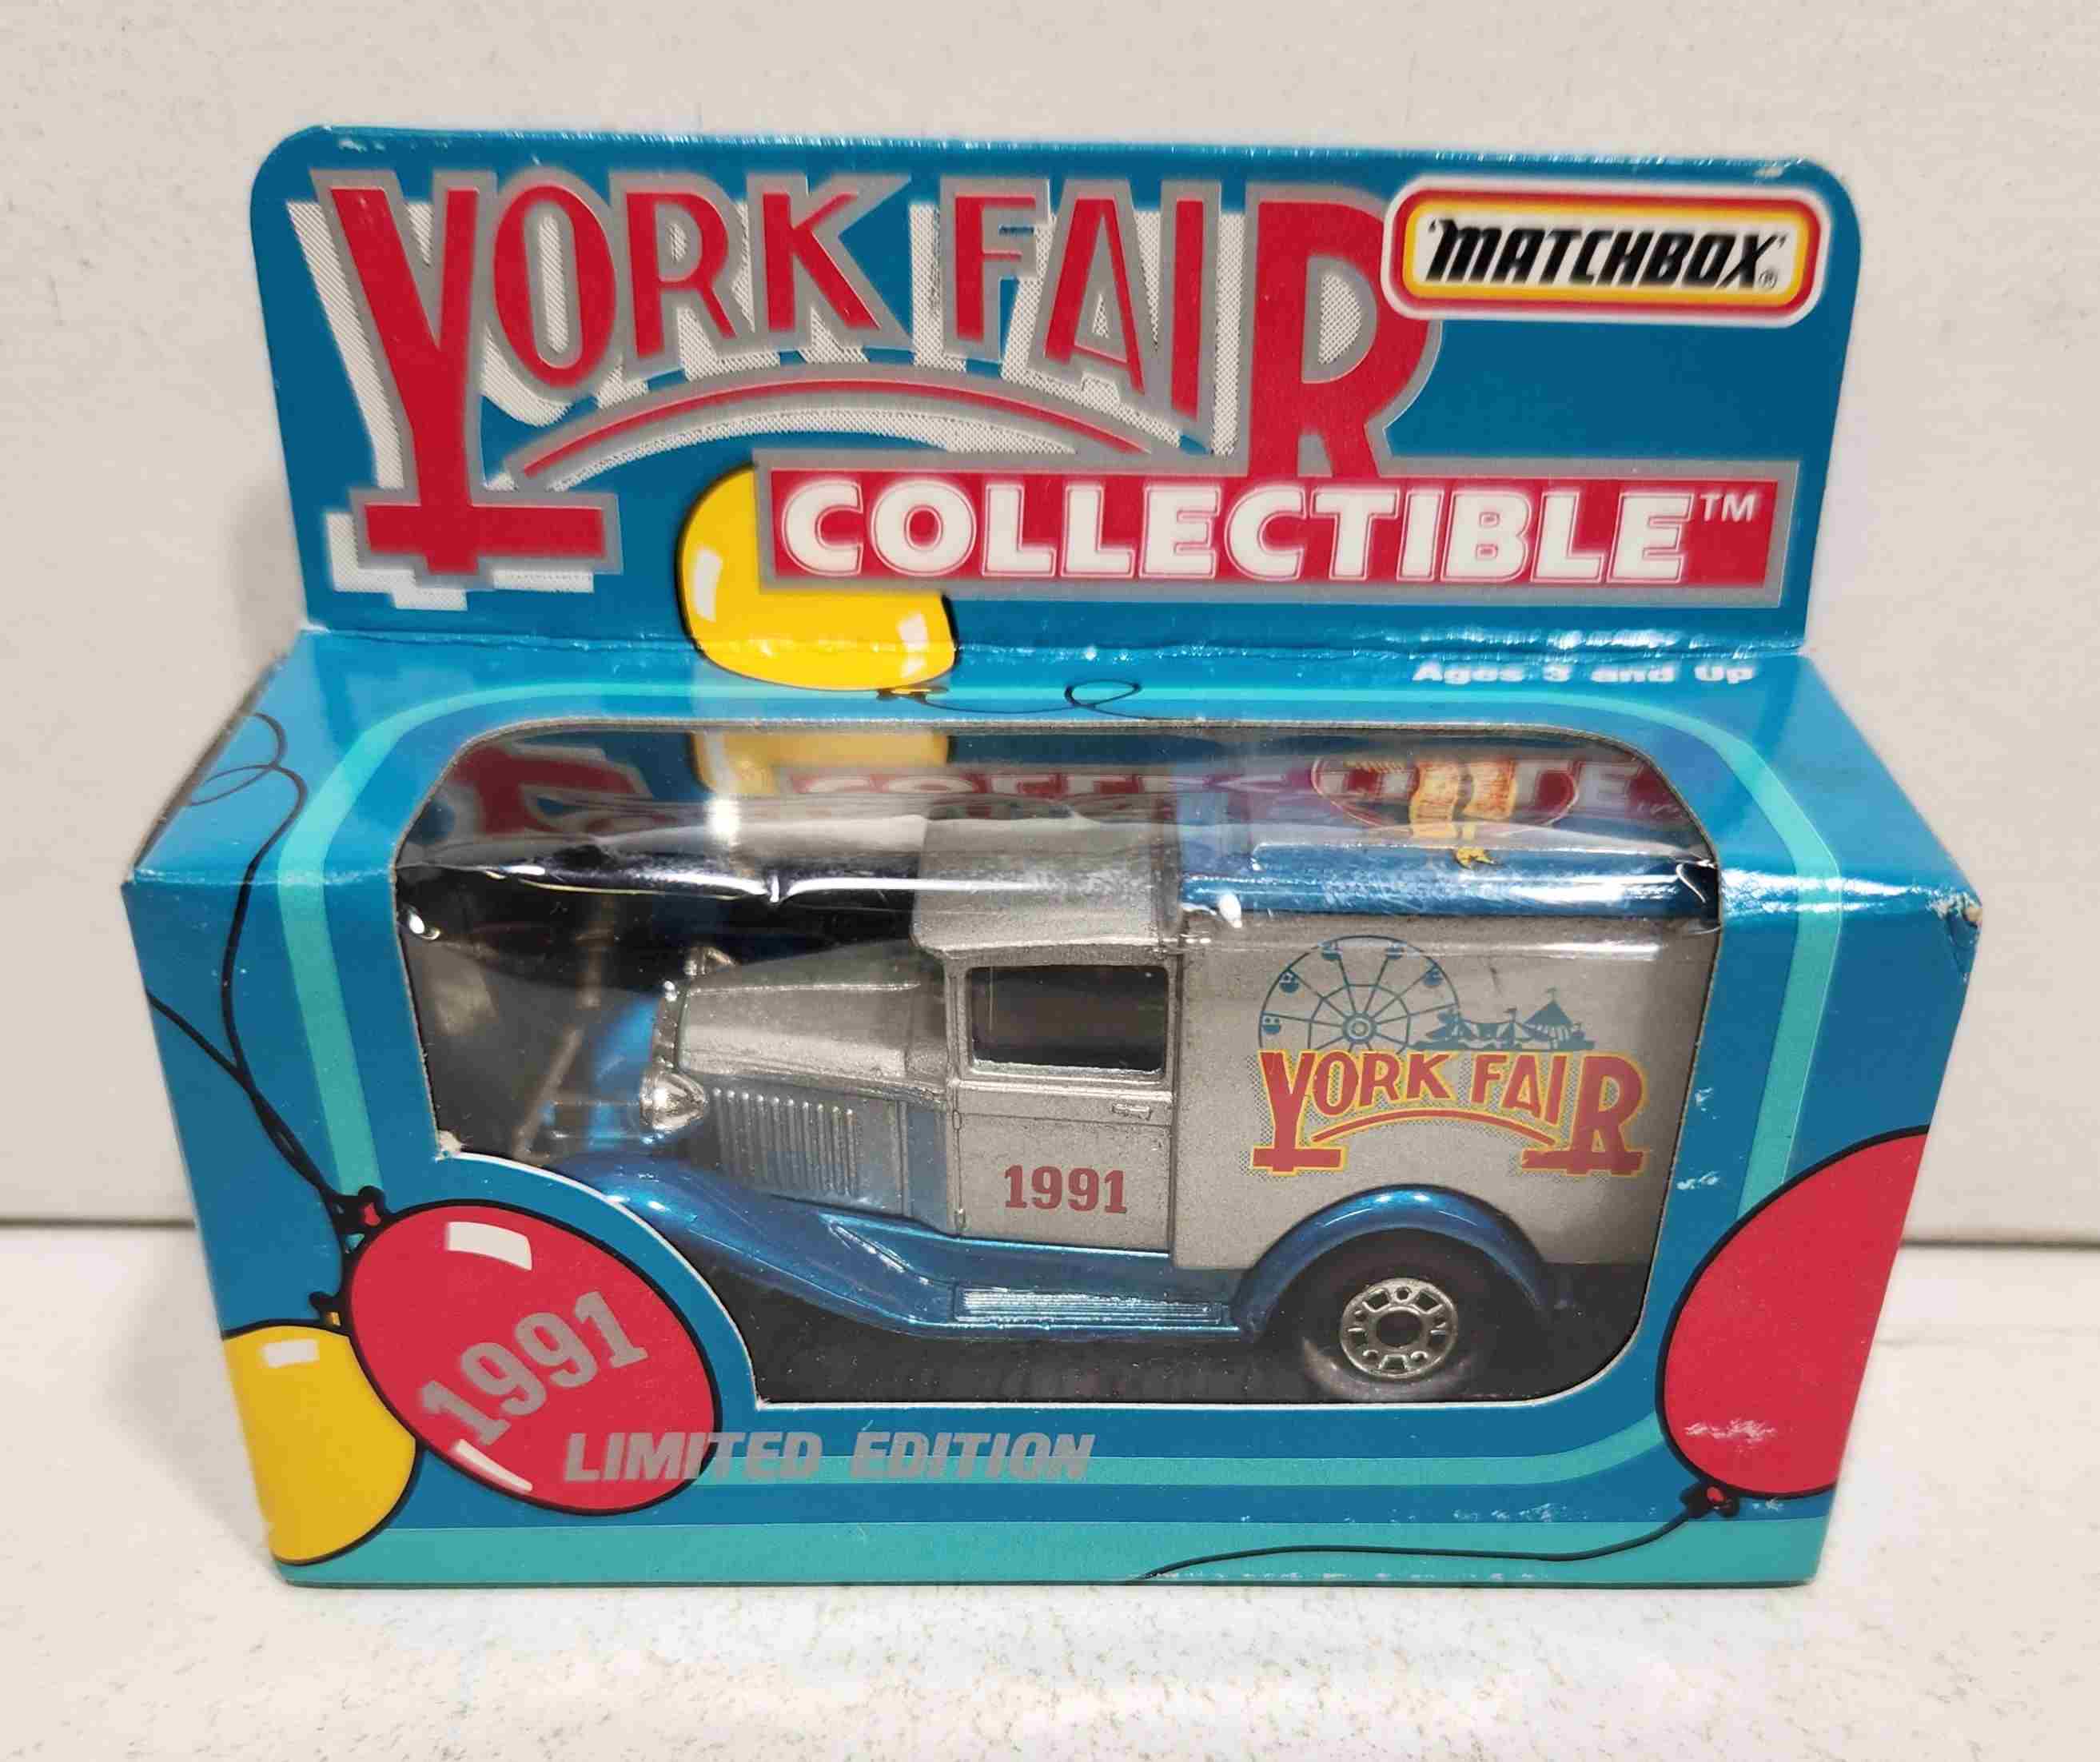 1991 York Fair 1/55th Old Time Box Truck